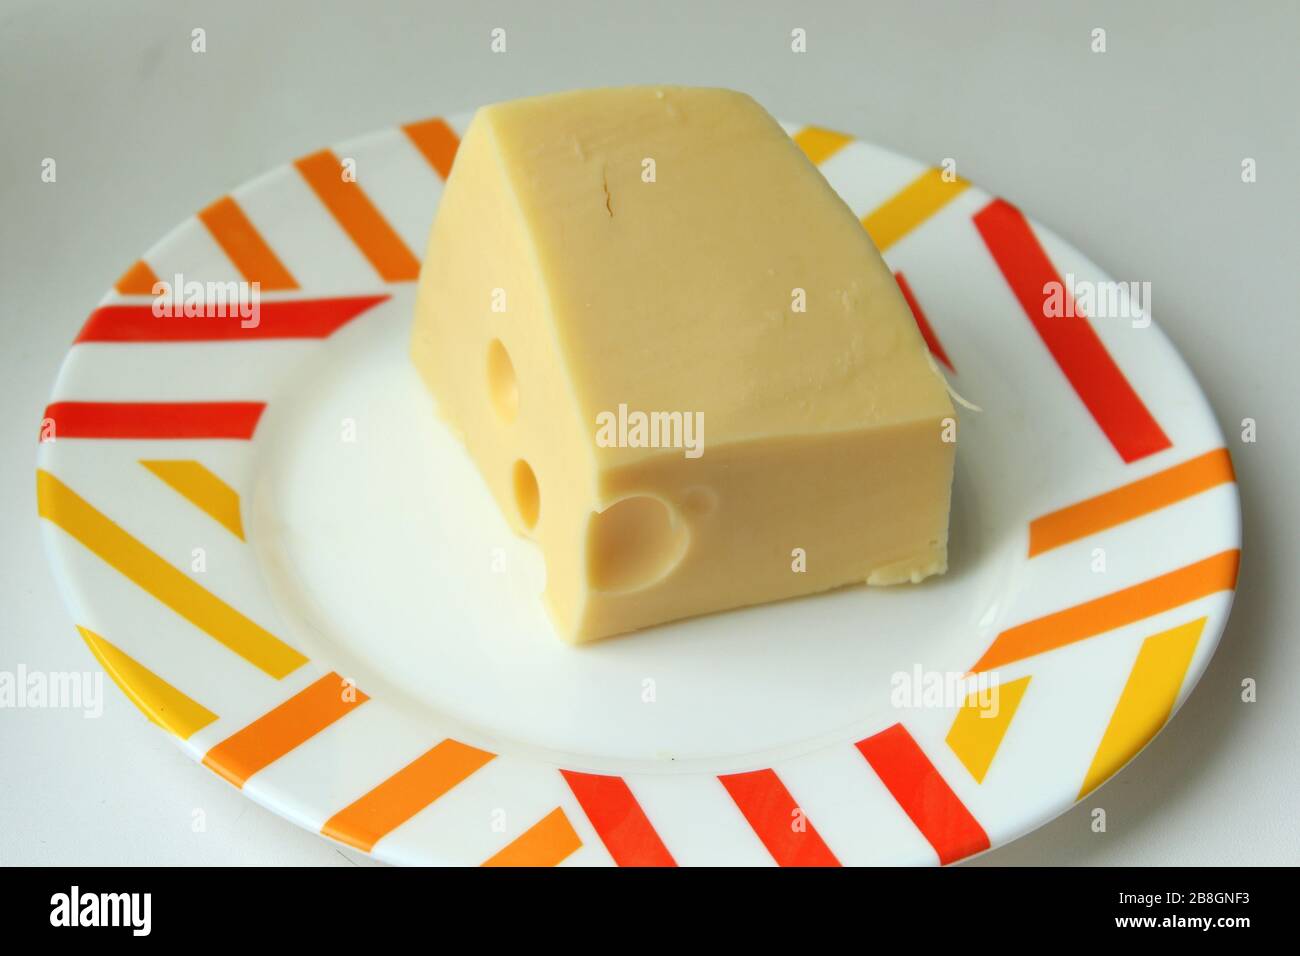 Un pezzo di formaggio giallo con buchi giace su un piatto bianco con un bordo colorato. Foto Stock